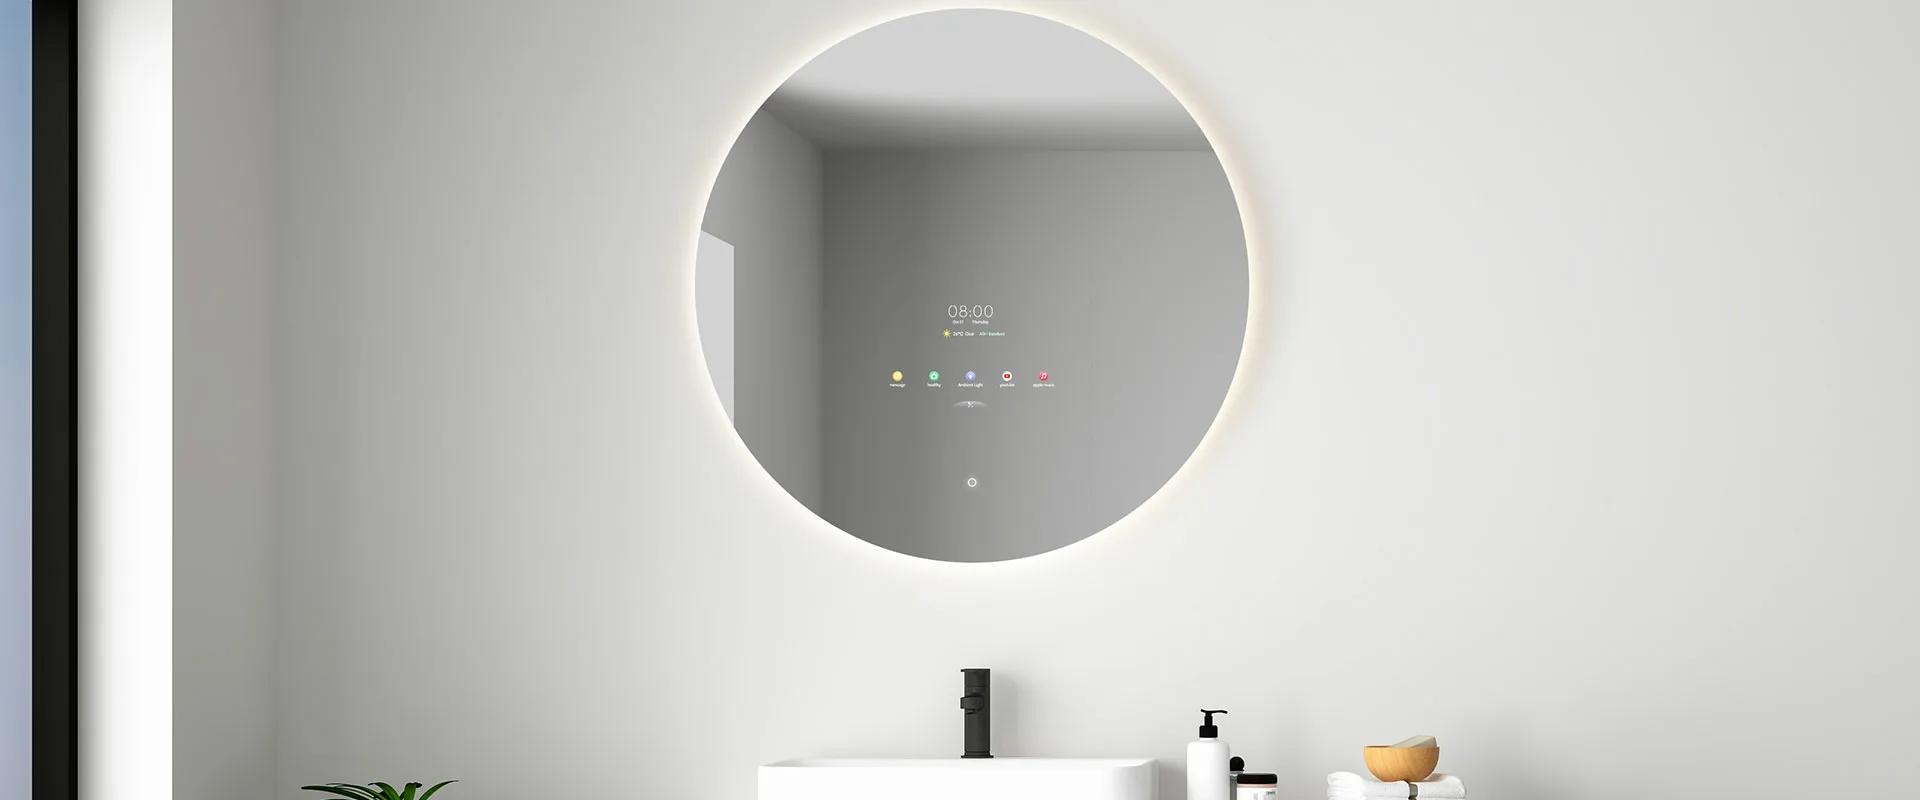 smart mirror hotel specchio intelligente AI